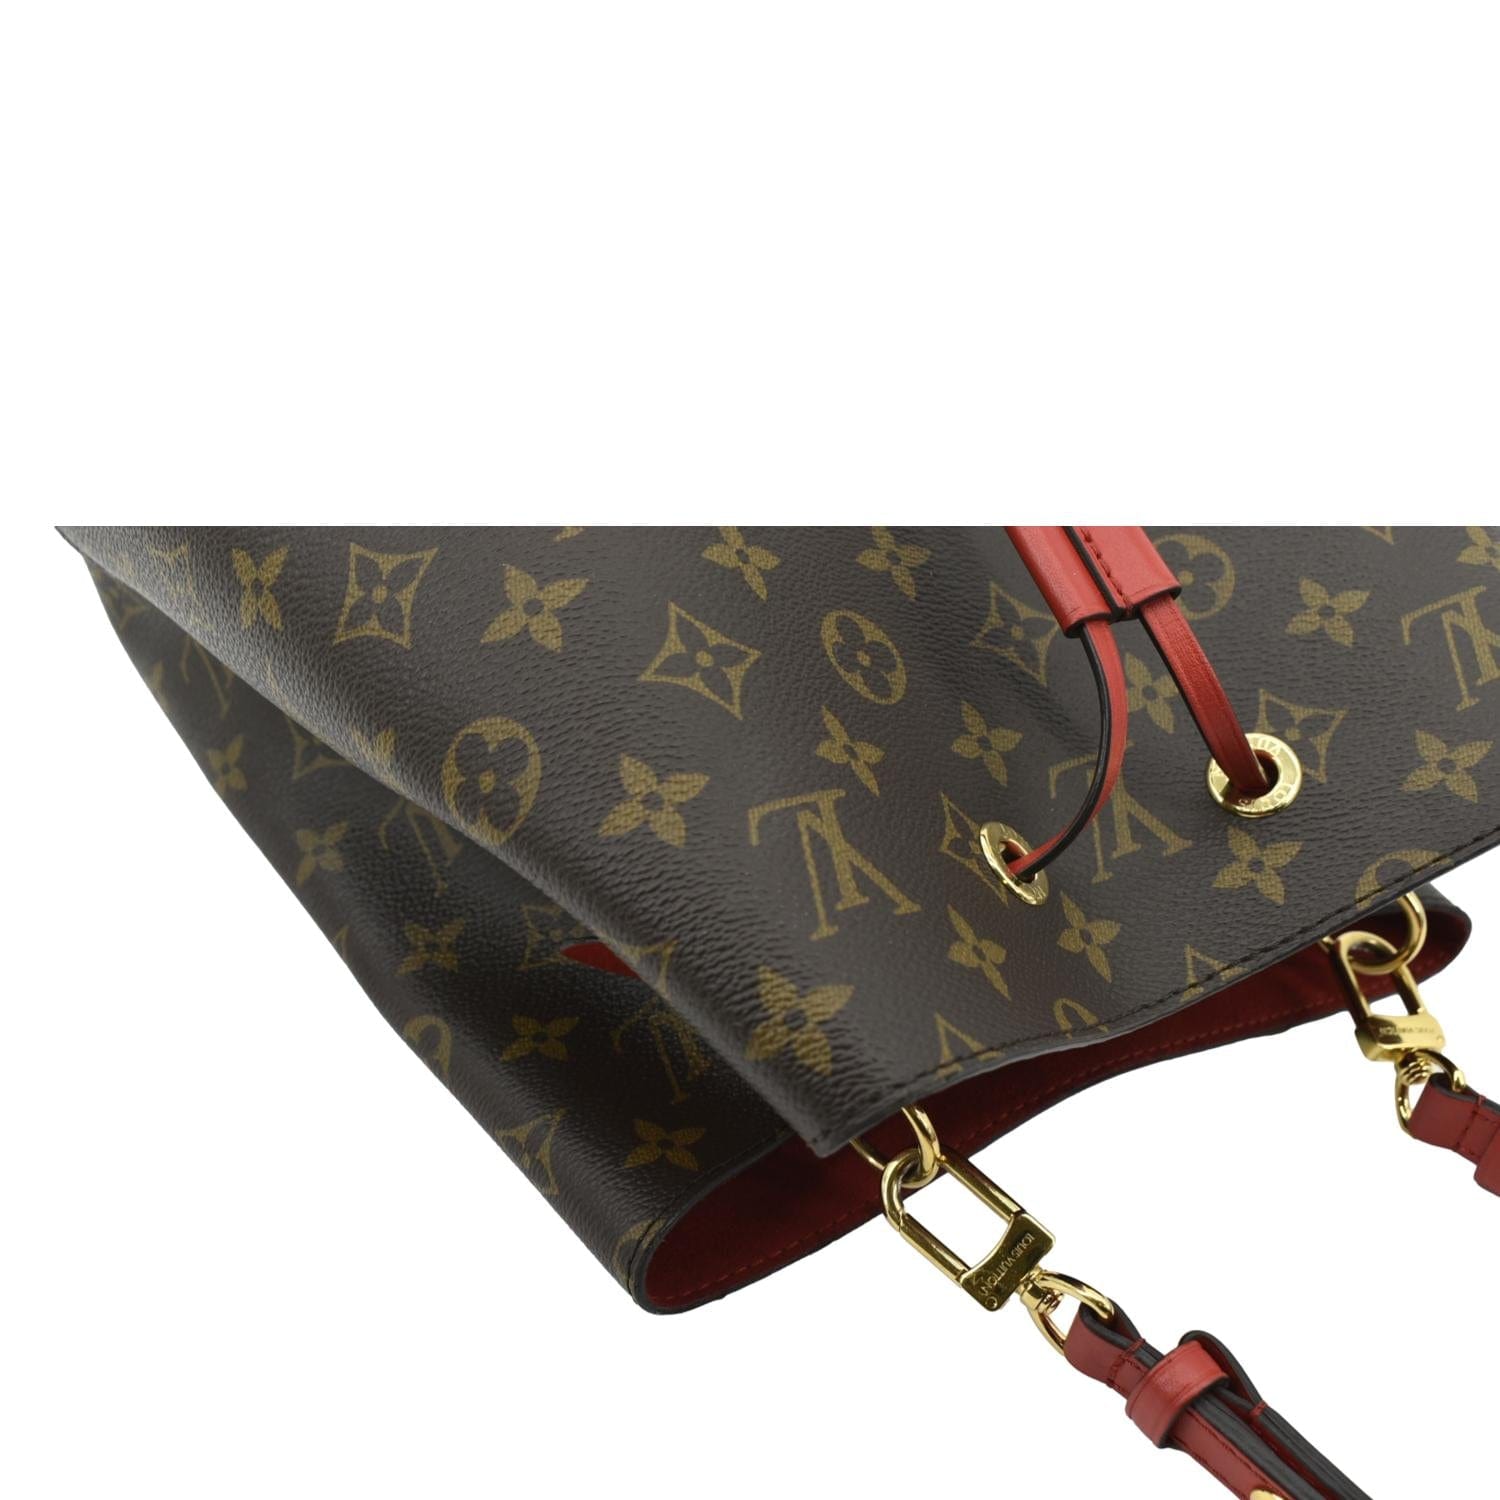 Louis Vuitton NeoNoe Handbag Monogram Canvas MM - ShopStyle Shoulder Bags